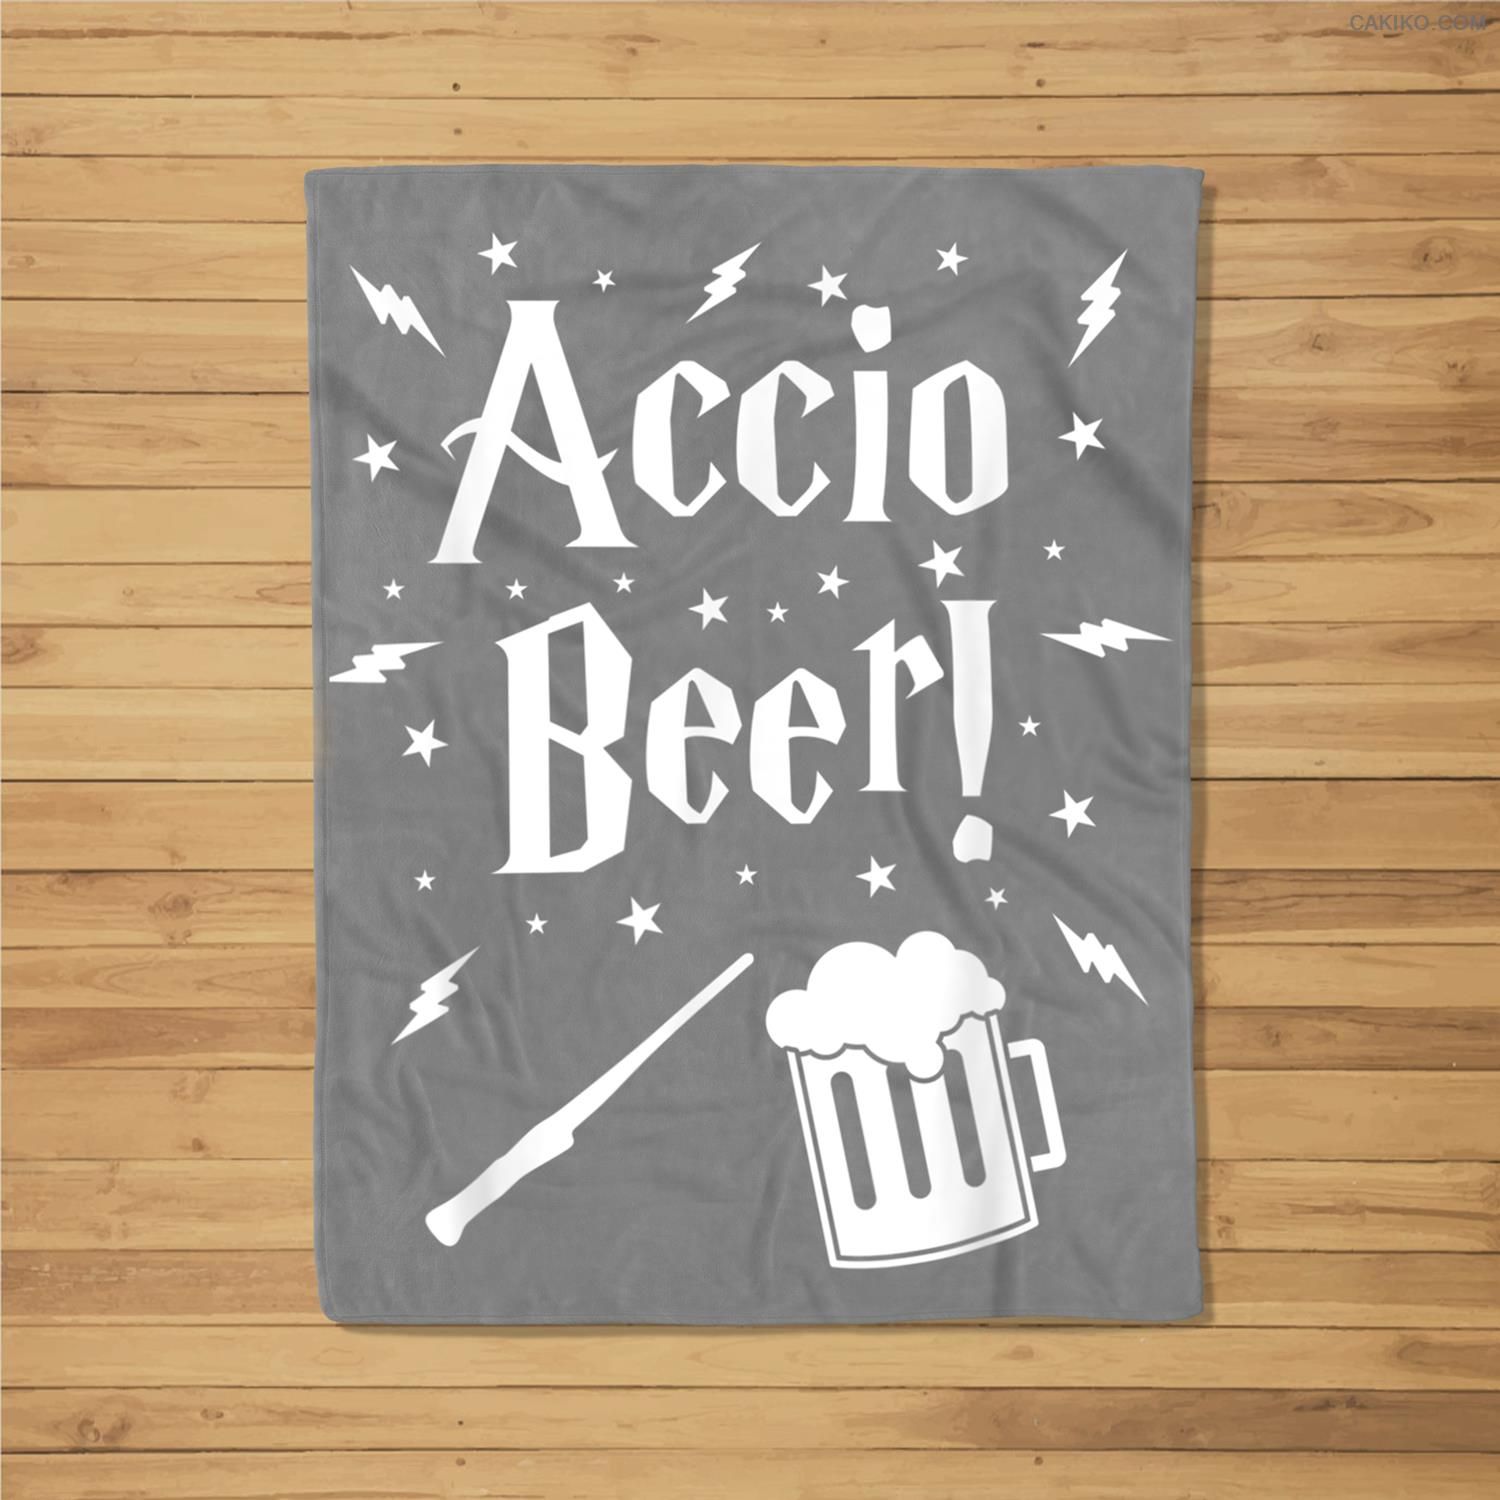 Accio Beer Essential , Welcome International Beer Day Fleece Blanket